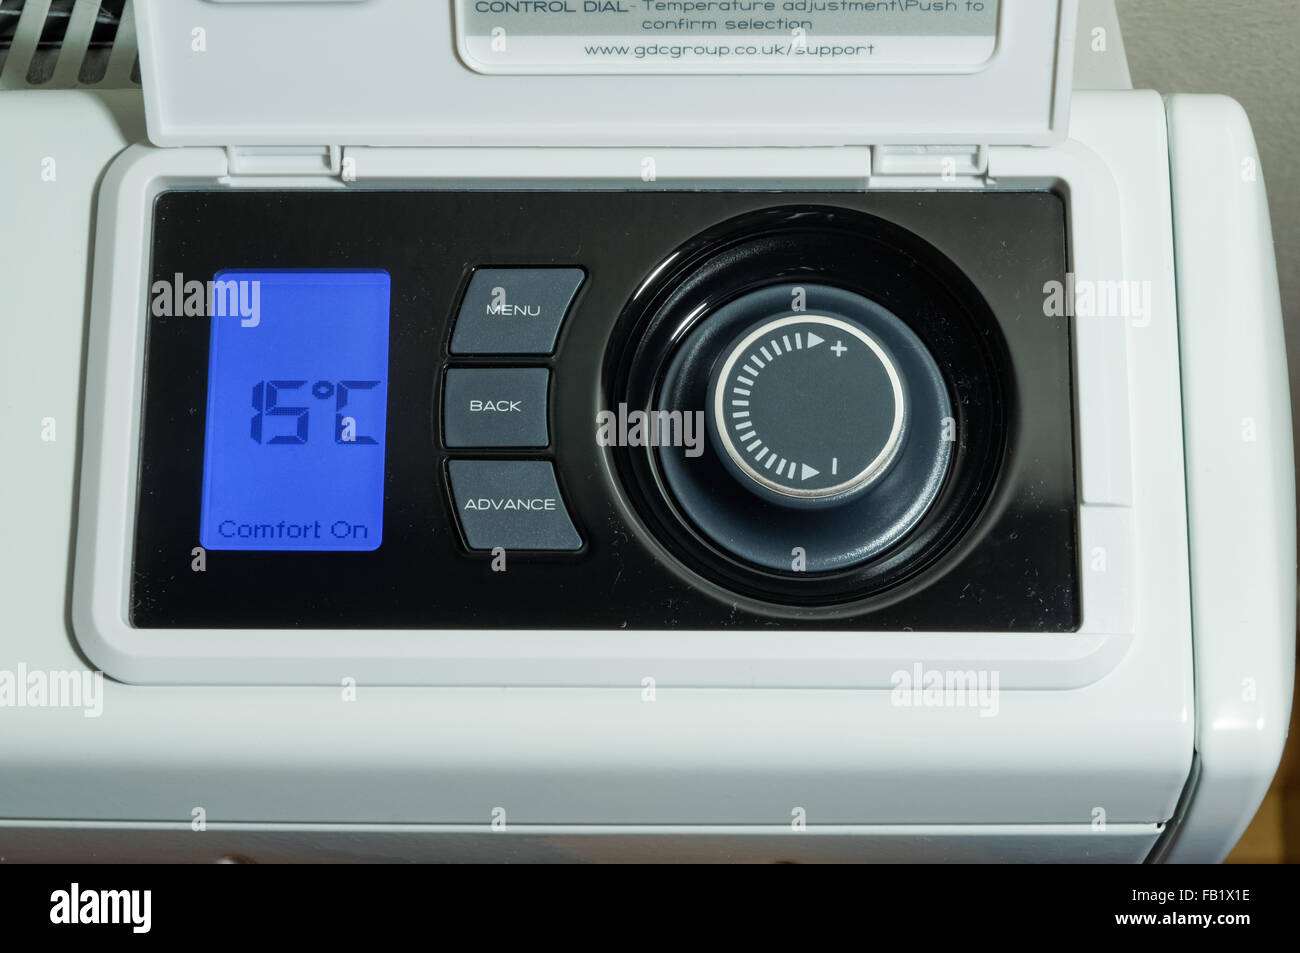 Chauffage central domestique, radiateur de stockage électrique, affichage LCD et panneau de commande de température réglé sur une température de 15 degrés celsius Banque D'Images